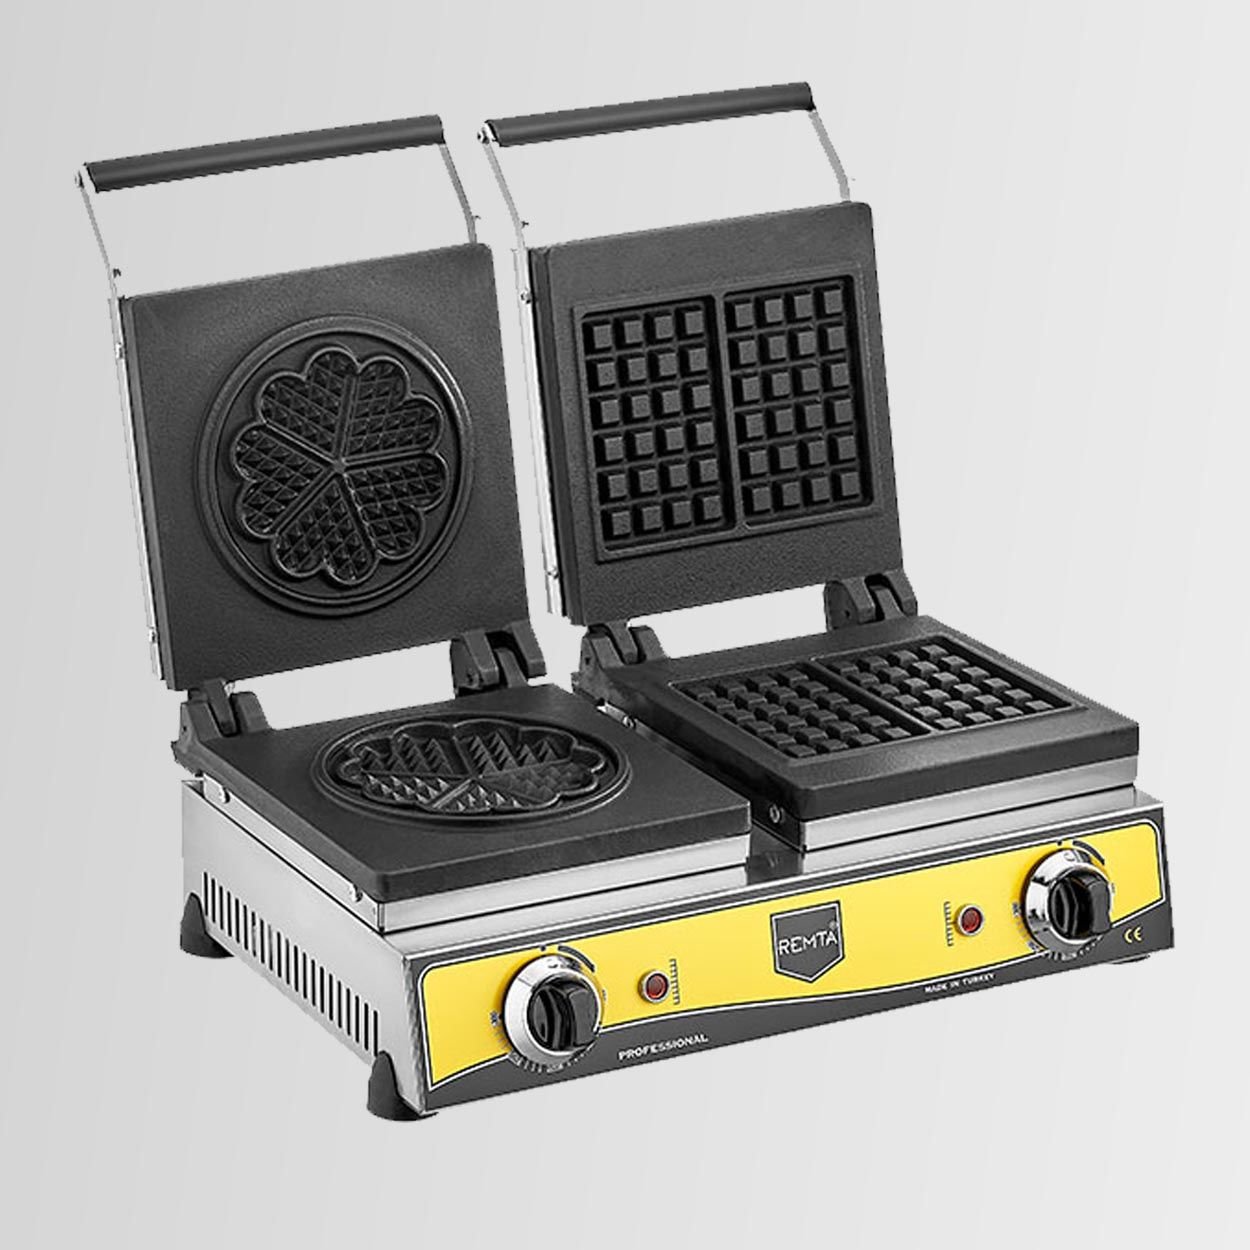 Remta W21 Sanayi Tipi Döküm Çiftli Kare + Çiçek Model (21 çap) Waffle Makinası Elektrikli